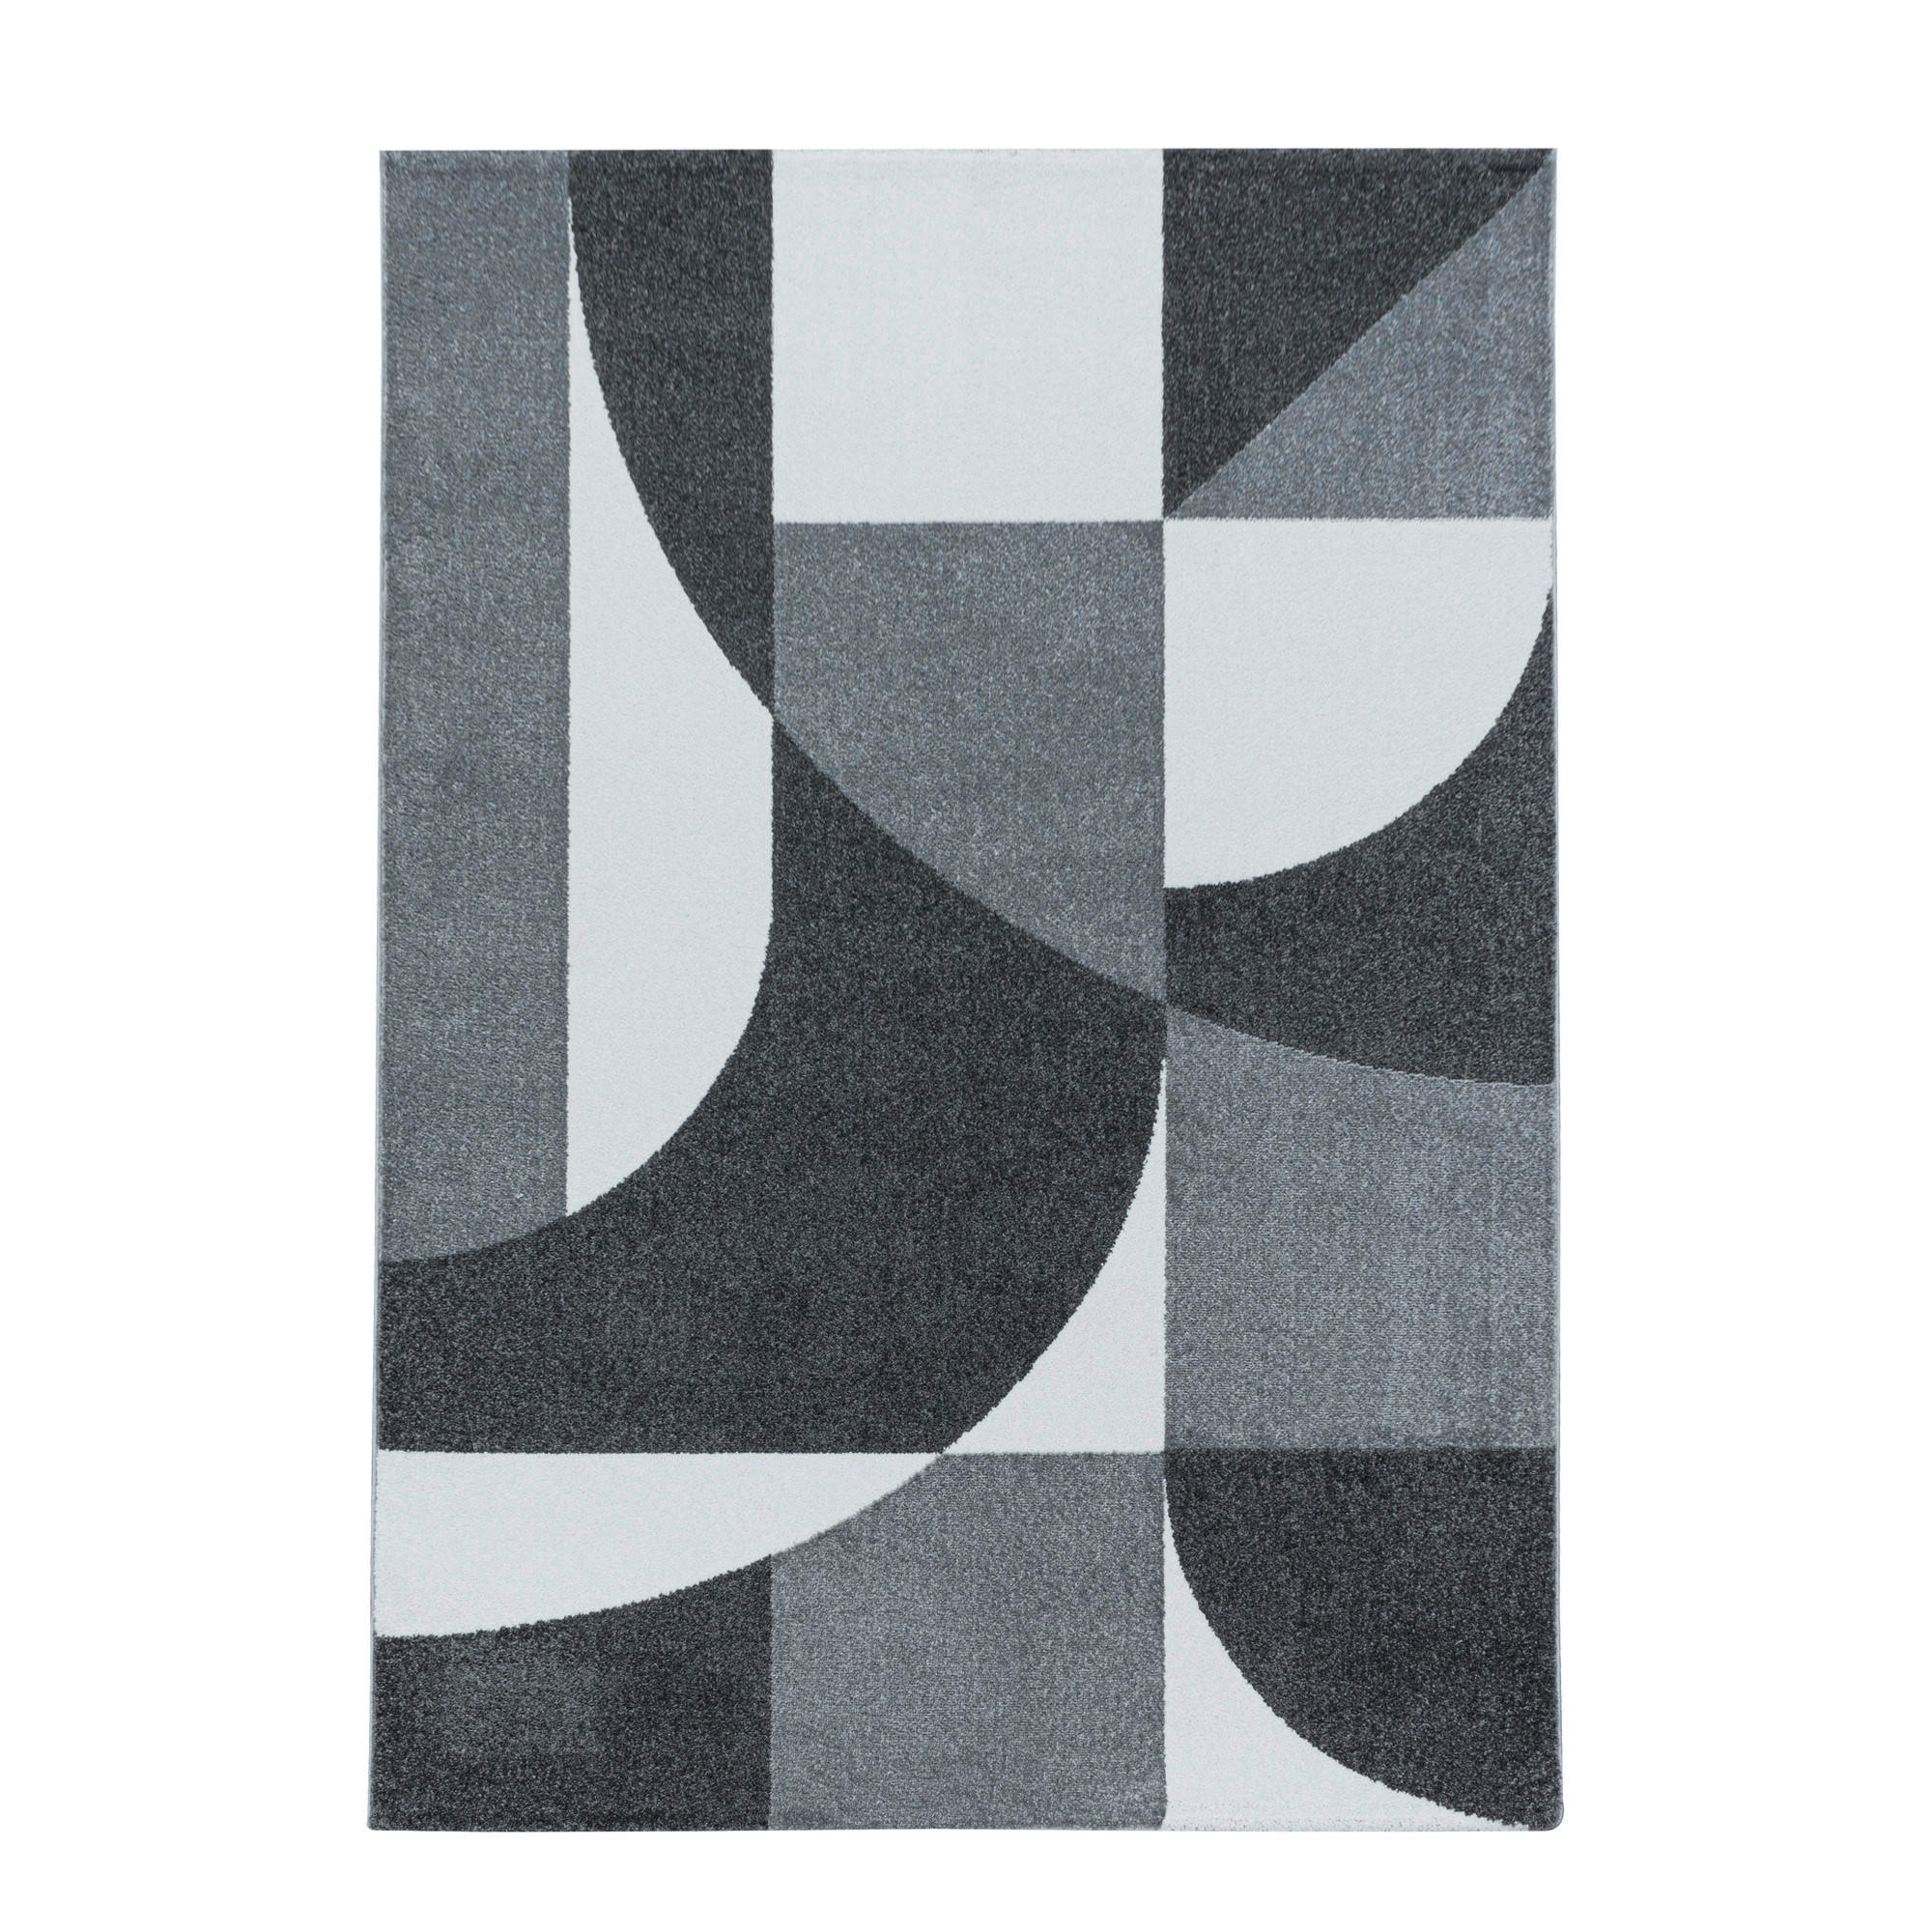 WEBTEPPICH 80/150 cm Efor 3711 grau  - Grau, Basics, Textil (80/150cm) - Novel